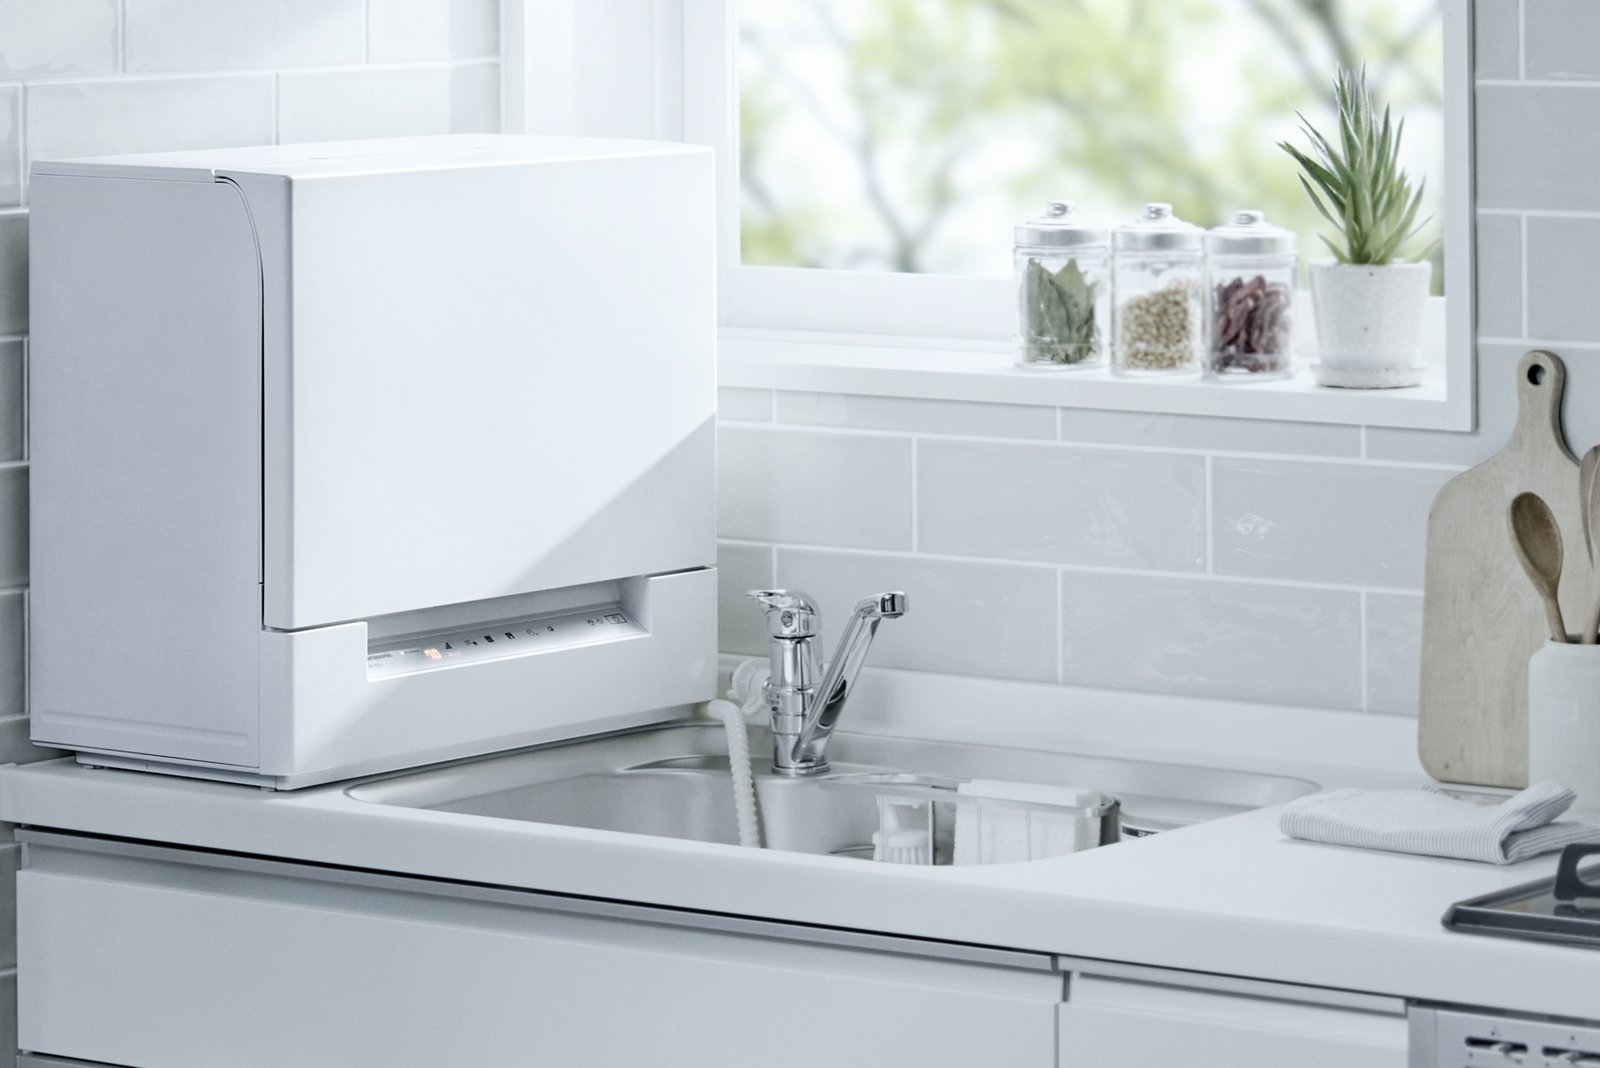 卓上型食器洗い乾燥機「スリム食洗機」NP-TSK1 他1機種を発売 | 個人 